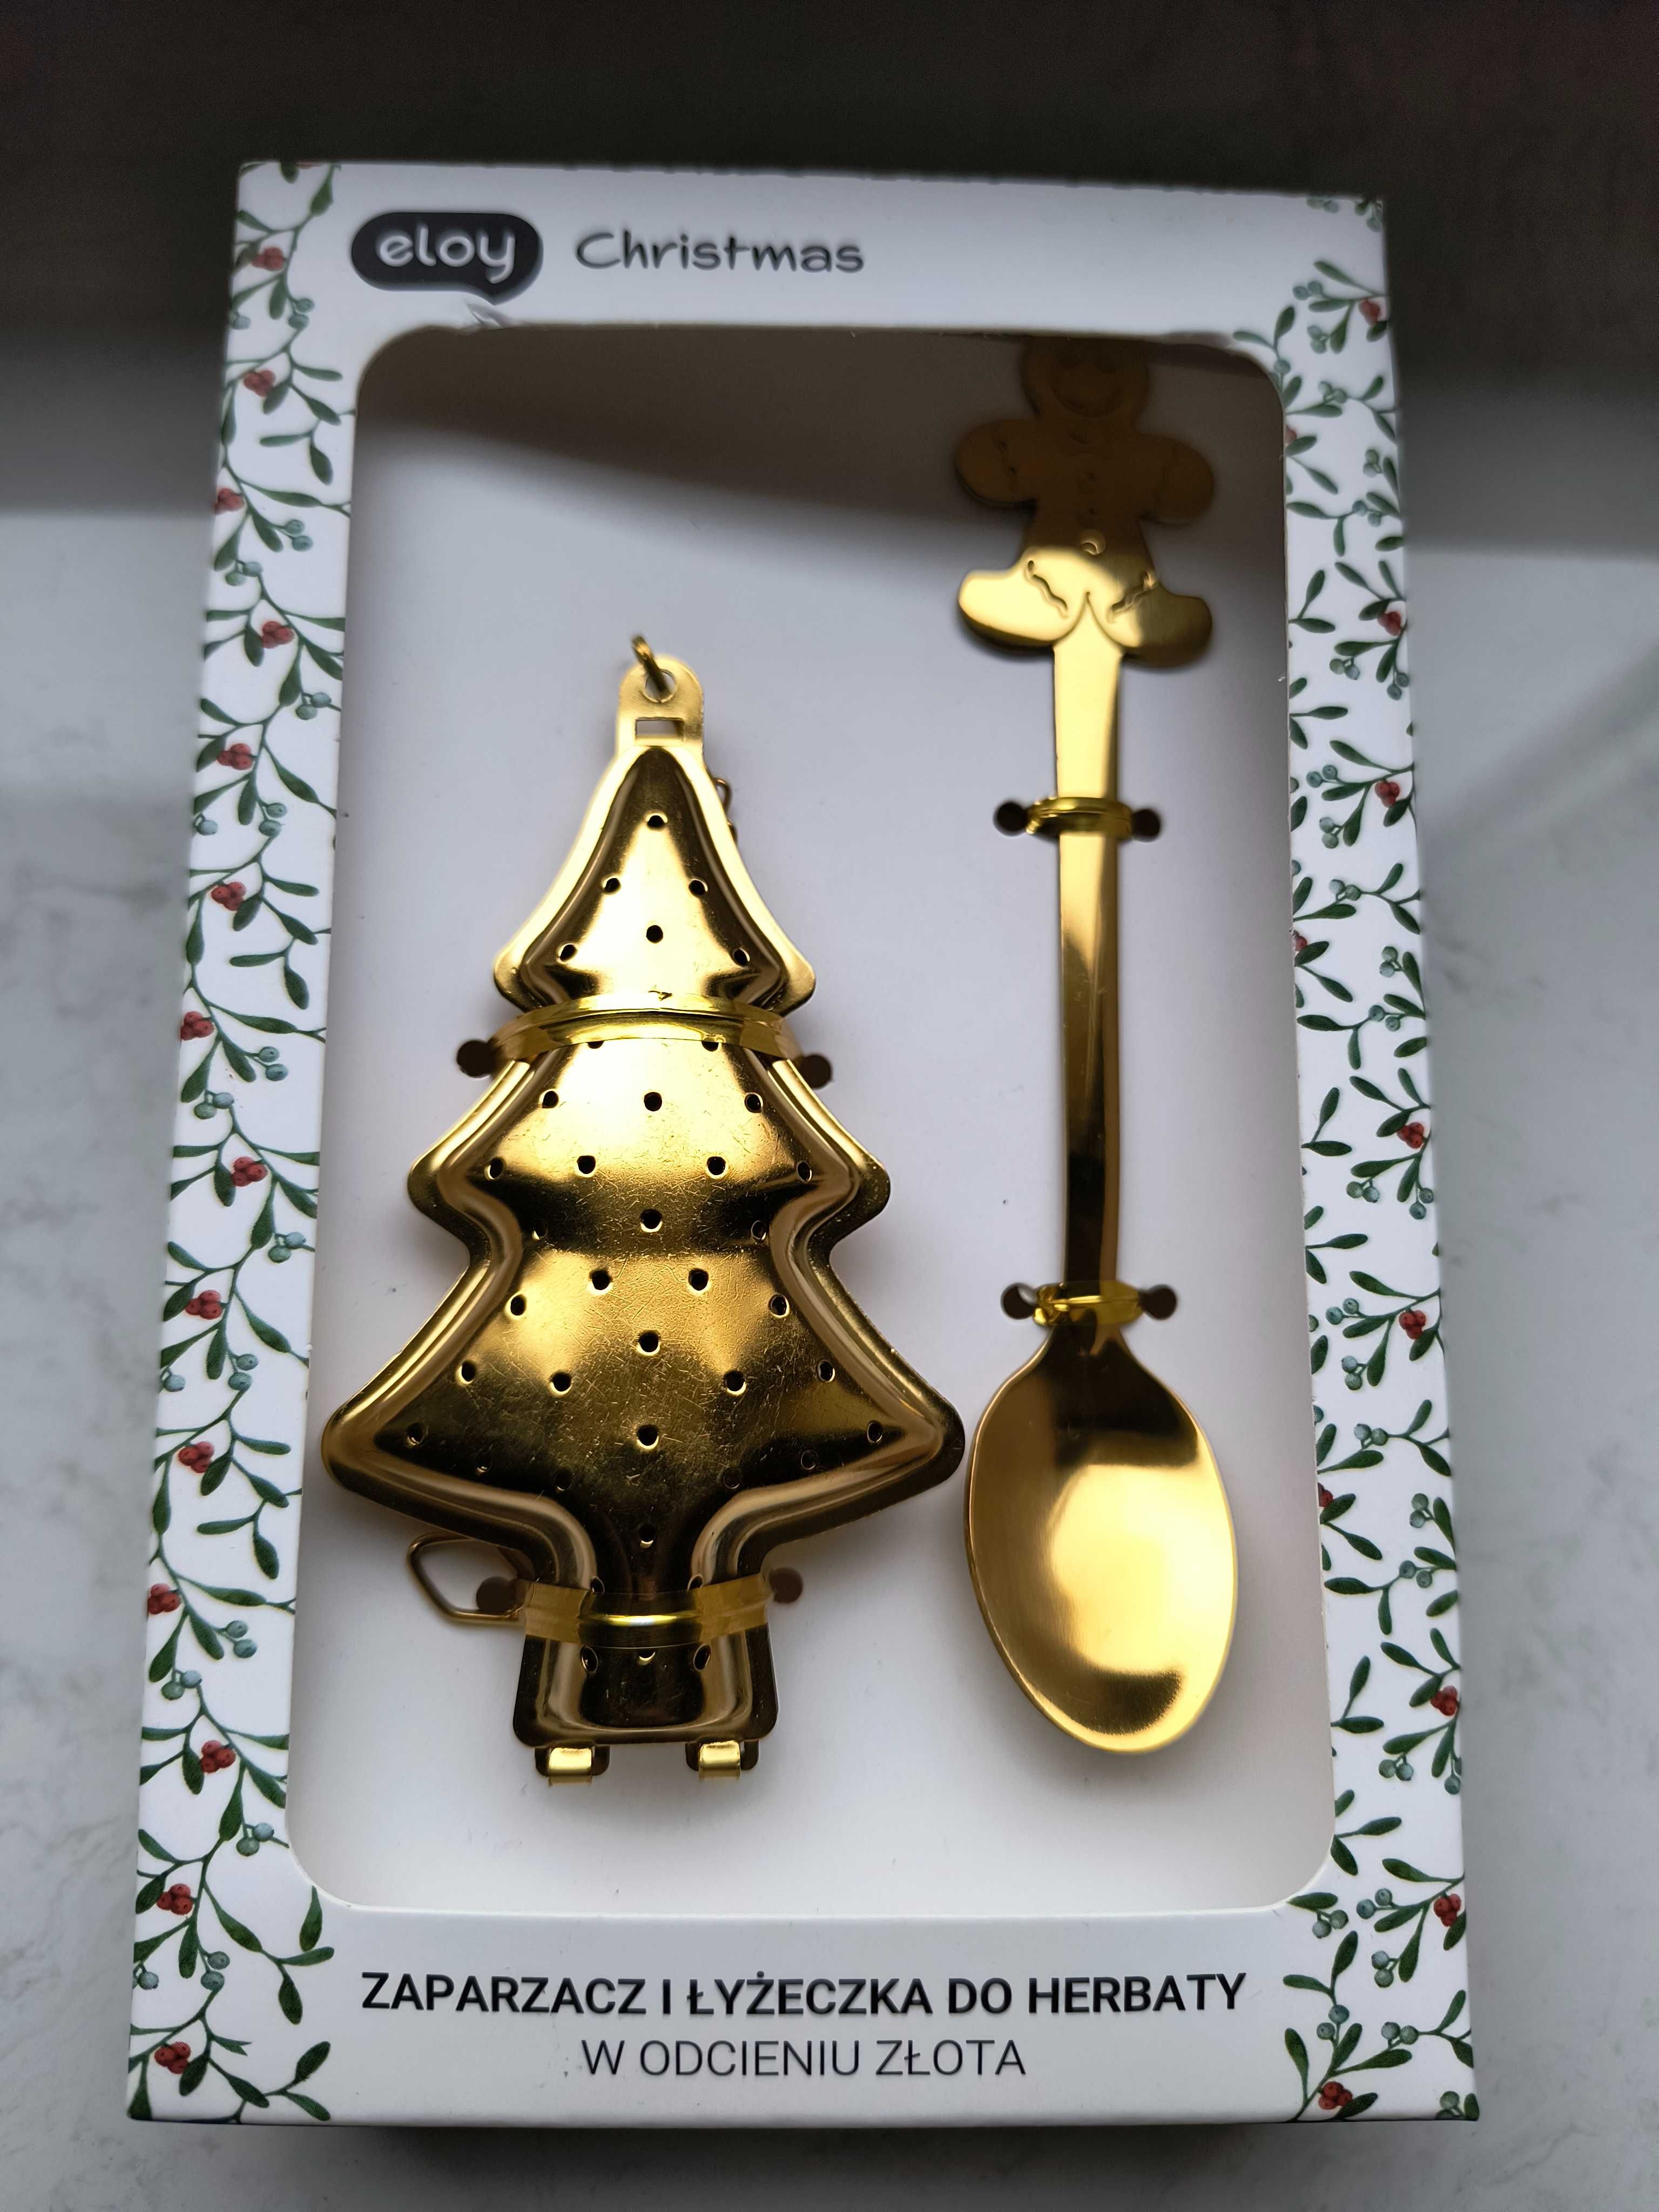 Zaparzacz i łyżeczka do herbaty w odcieniu złota eloy Christmas